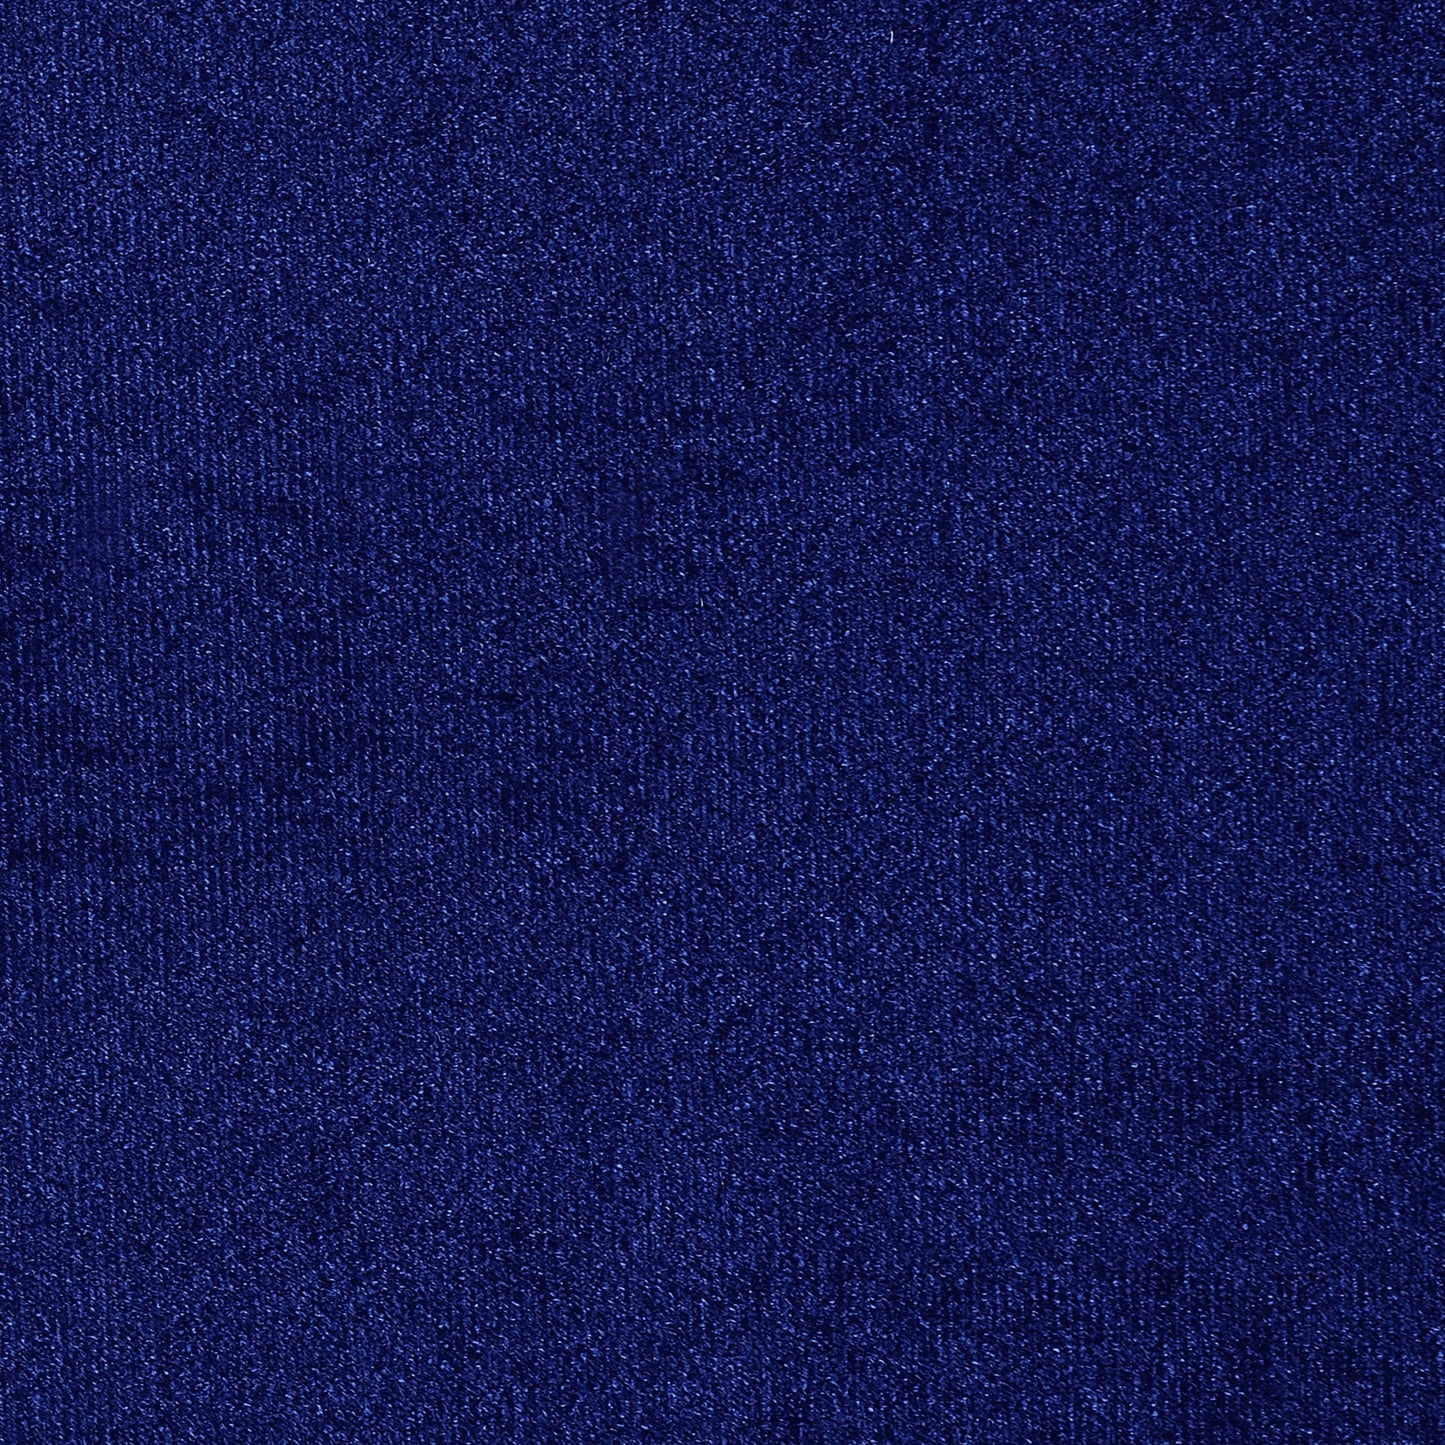 Bleker Tufted Tuxedo Arm Sofa Blue